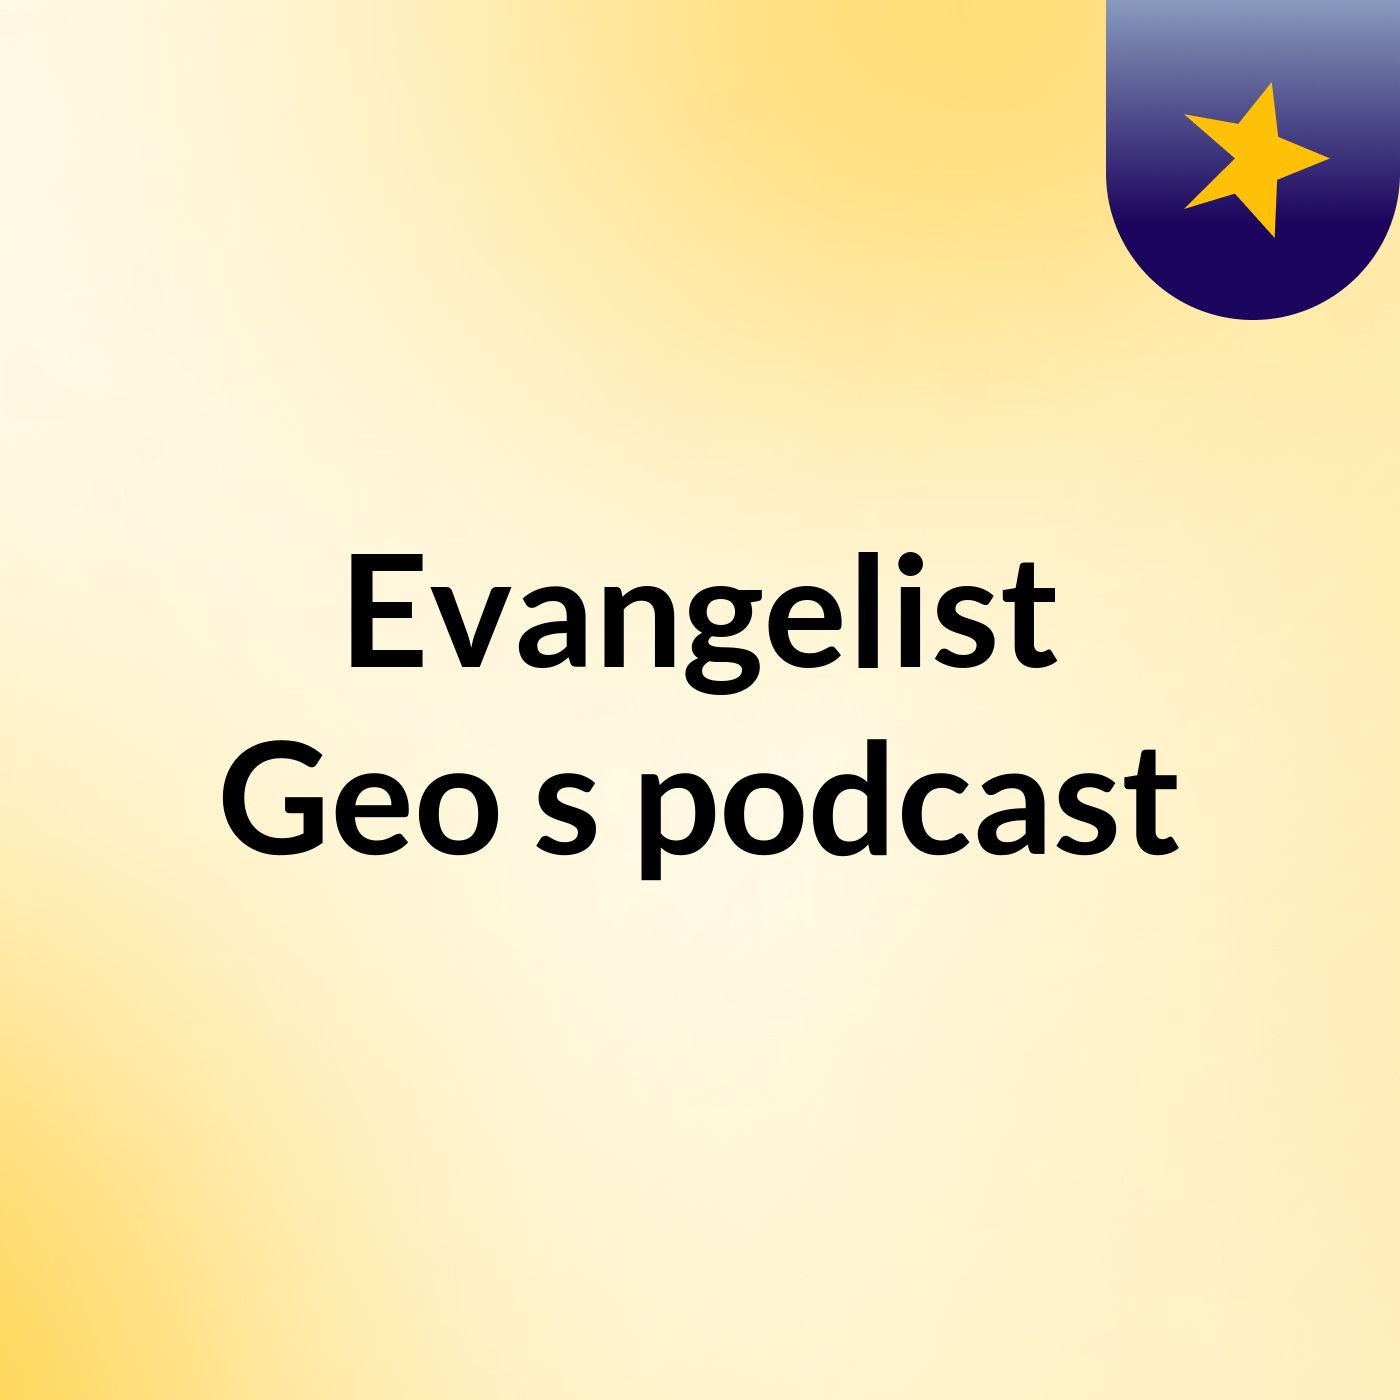 Evangelist Geo's podcast